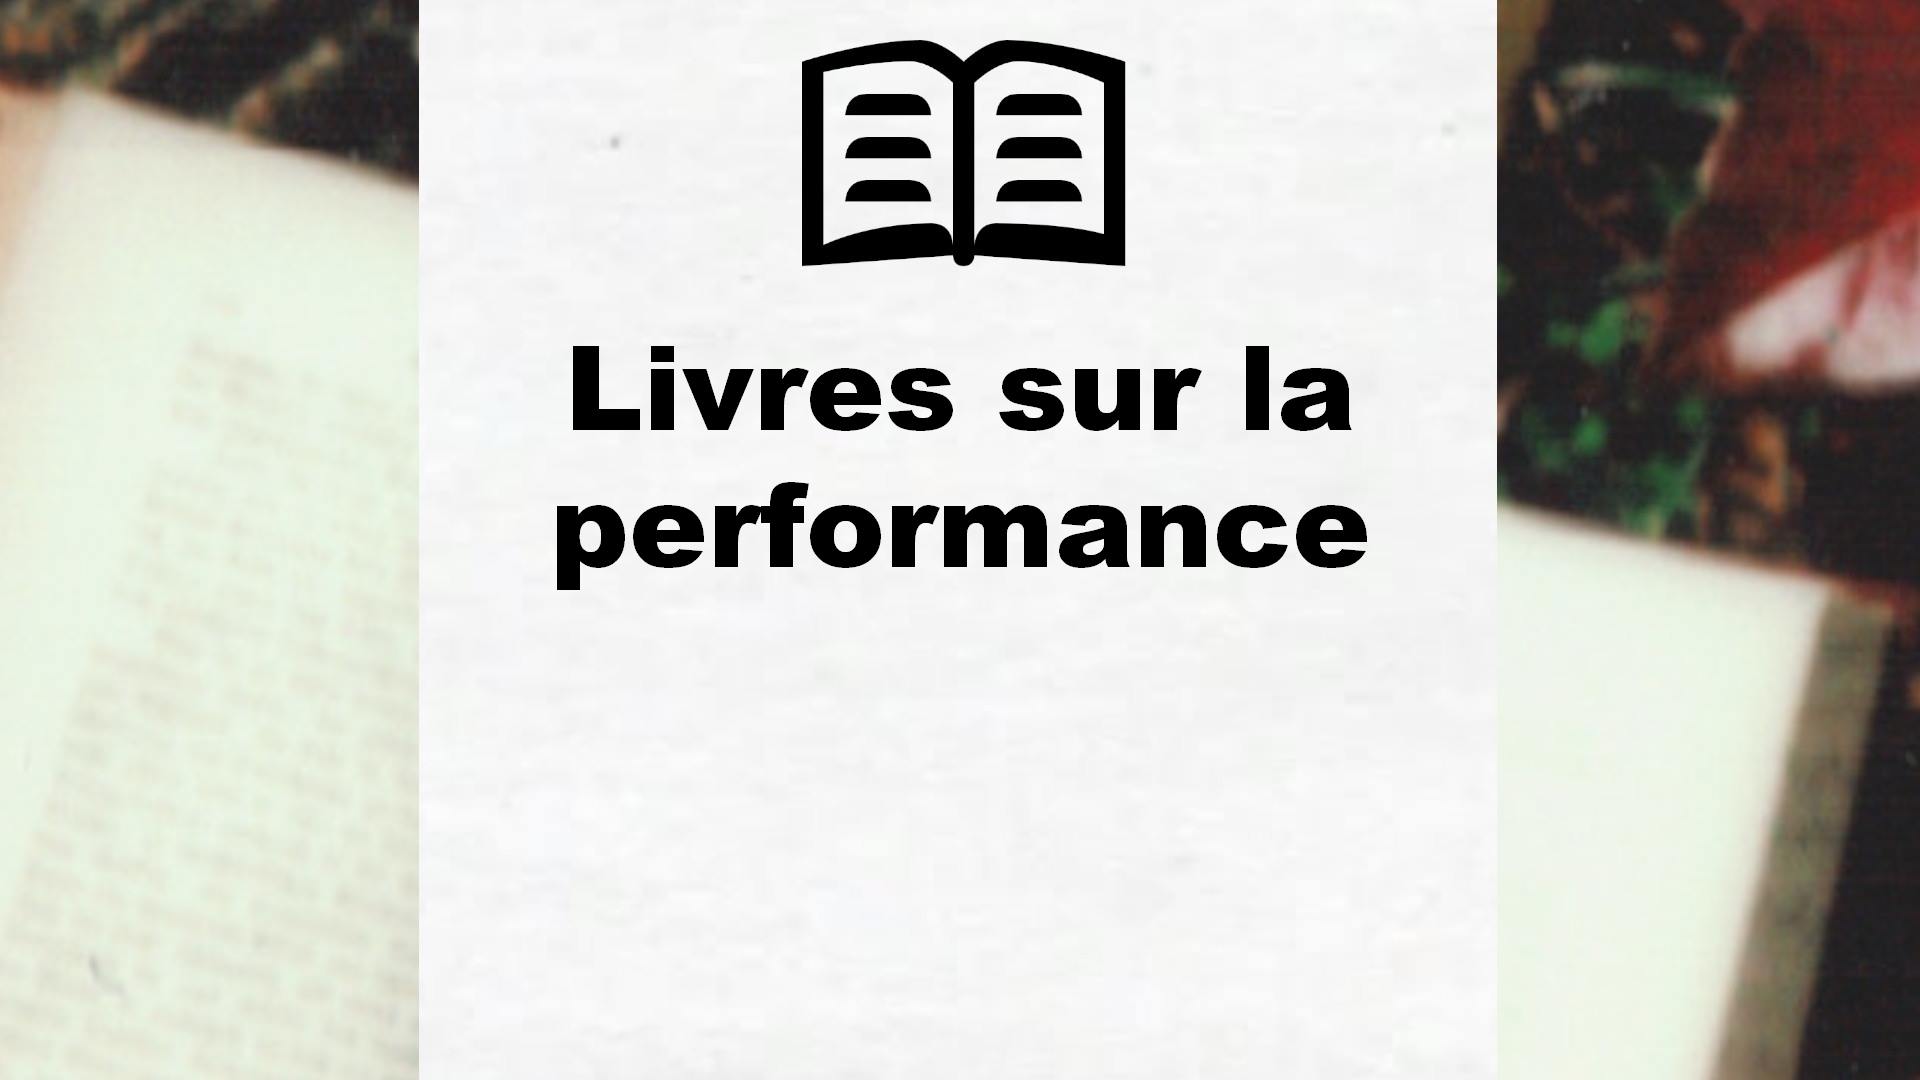 Livres sur la performance